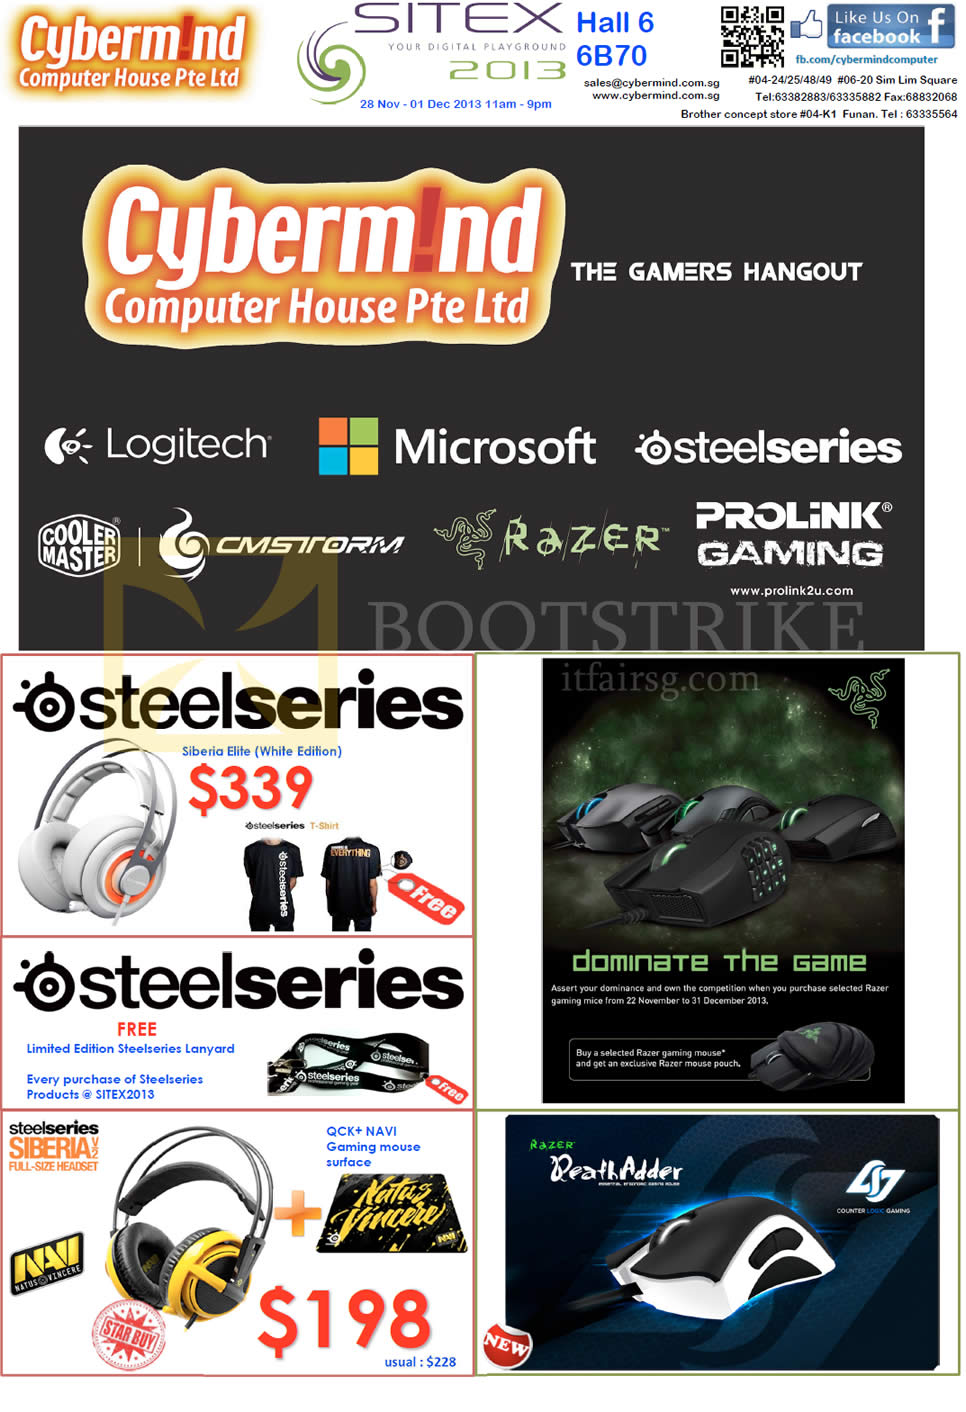 SITEX 2013 price list image brochure of Cybermind Gamer Hardware Steelseries Siberia Elite Headphones, QCK Navi Mouse Pad